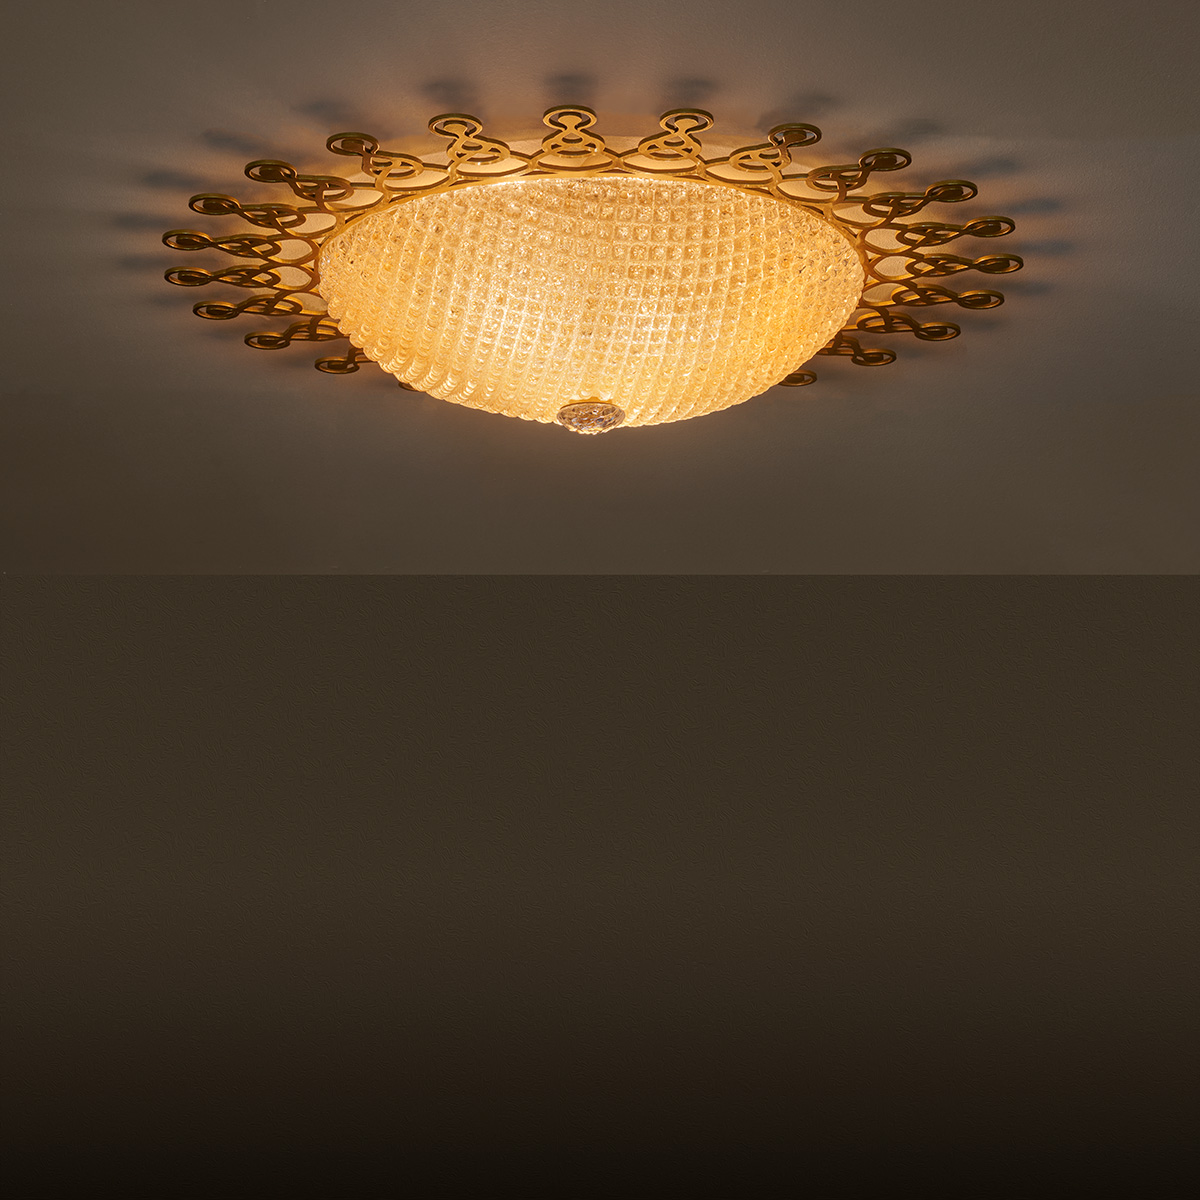 Οριεντάλ φωτιστικό οροφής με κρύσταλλο Μουράνο ΚΟΡΩΝΑ oriental ceiling lamp with amber Murano crystal